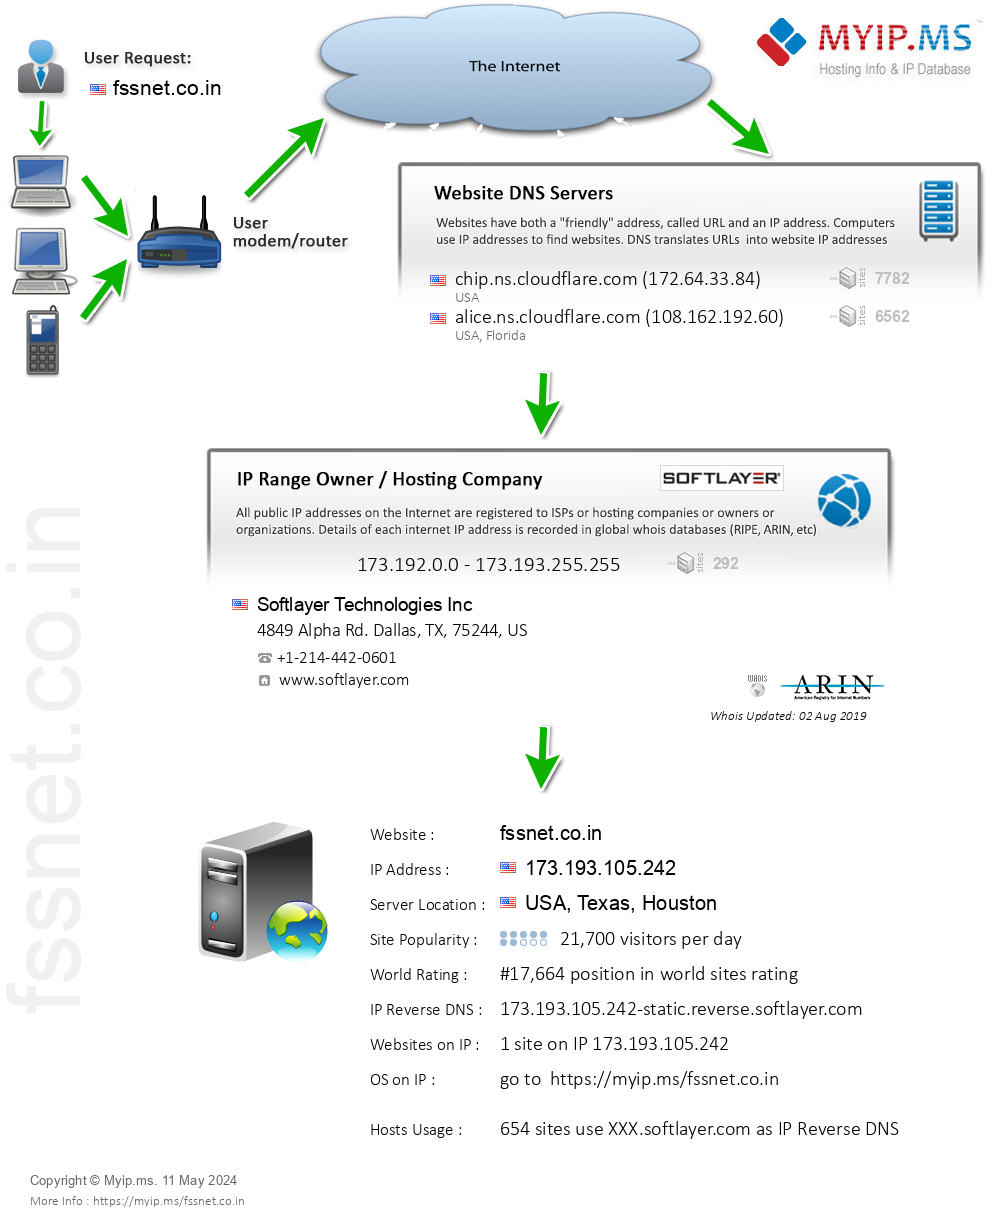 Fssnet.co.in - Website Hosting Visual IP Diagram